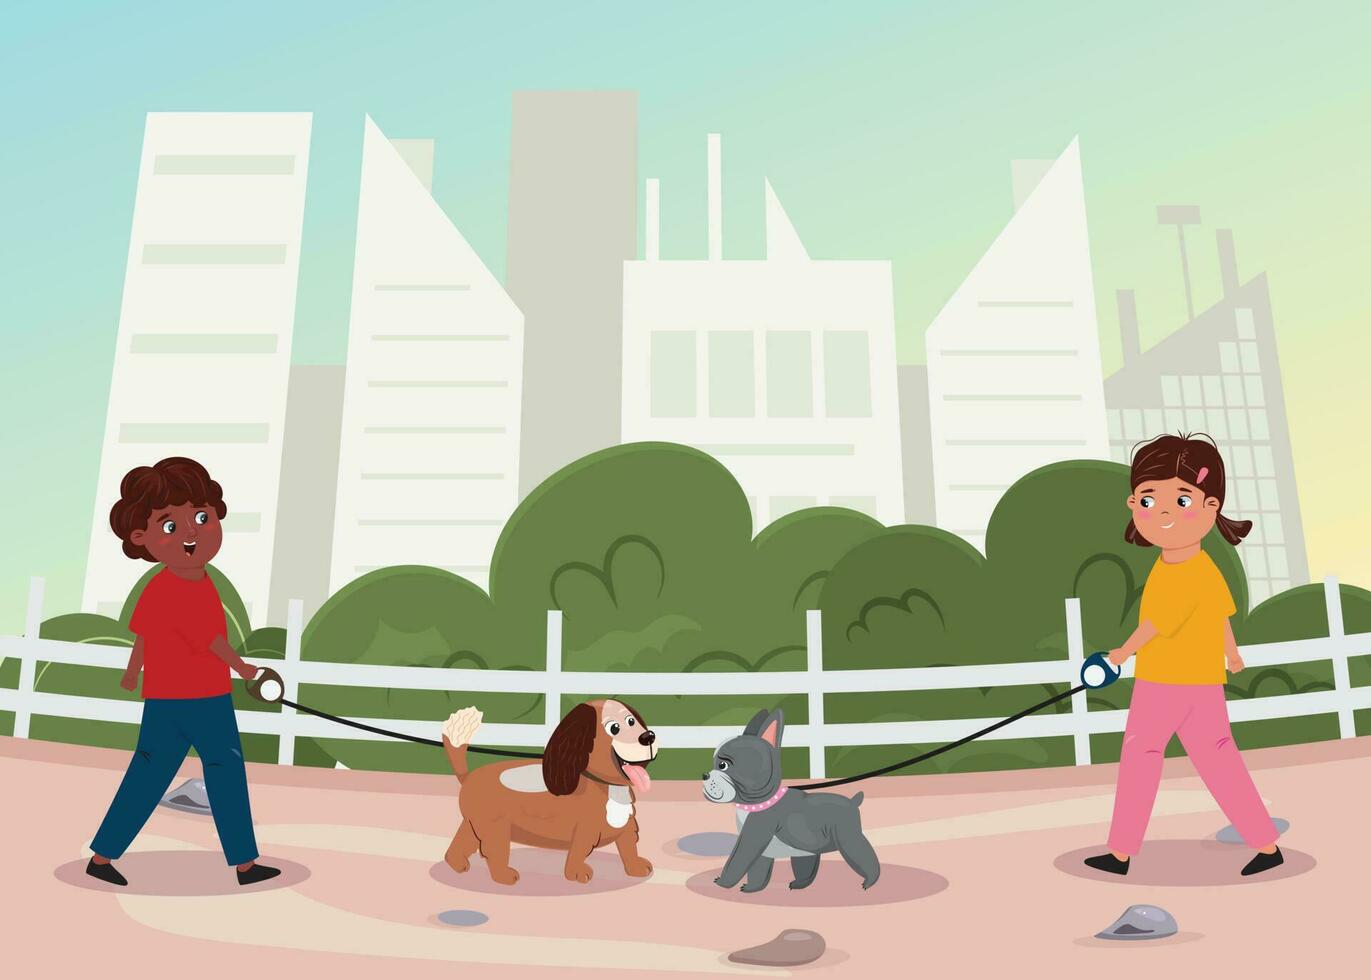 jongen en meisje wandelen hun honden buitenshuis in de stad park. vrienden vergadering elk andere in de park en ontwaken hun honden. zorg, vriendschap, liefde, vrije tijd concept illustratie. vector